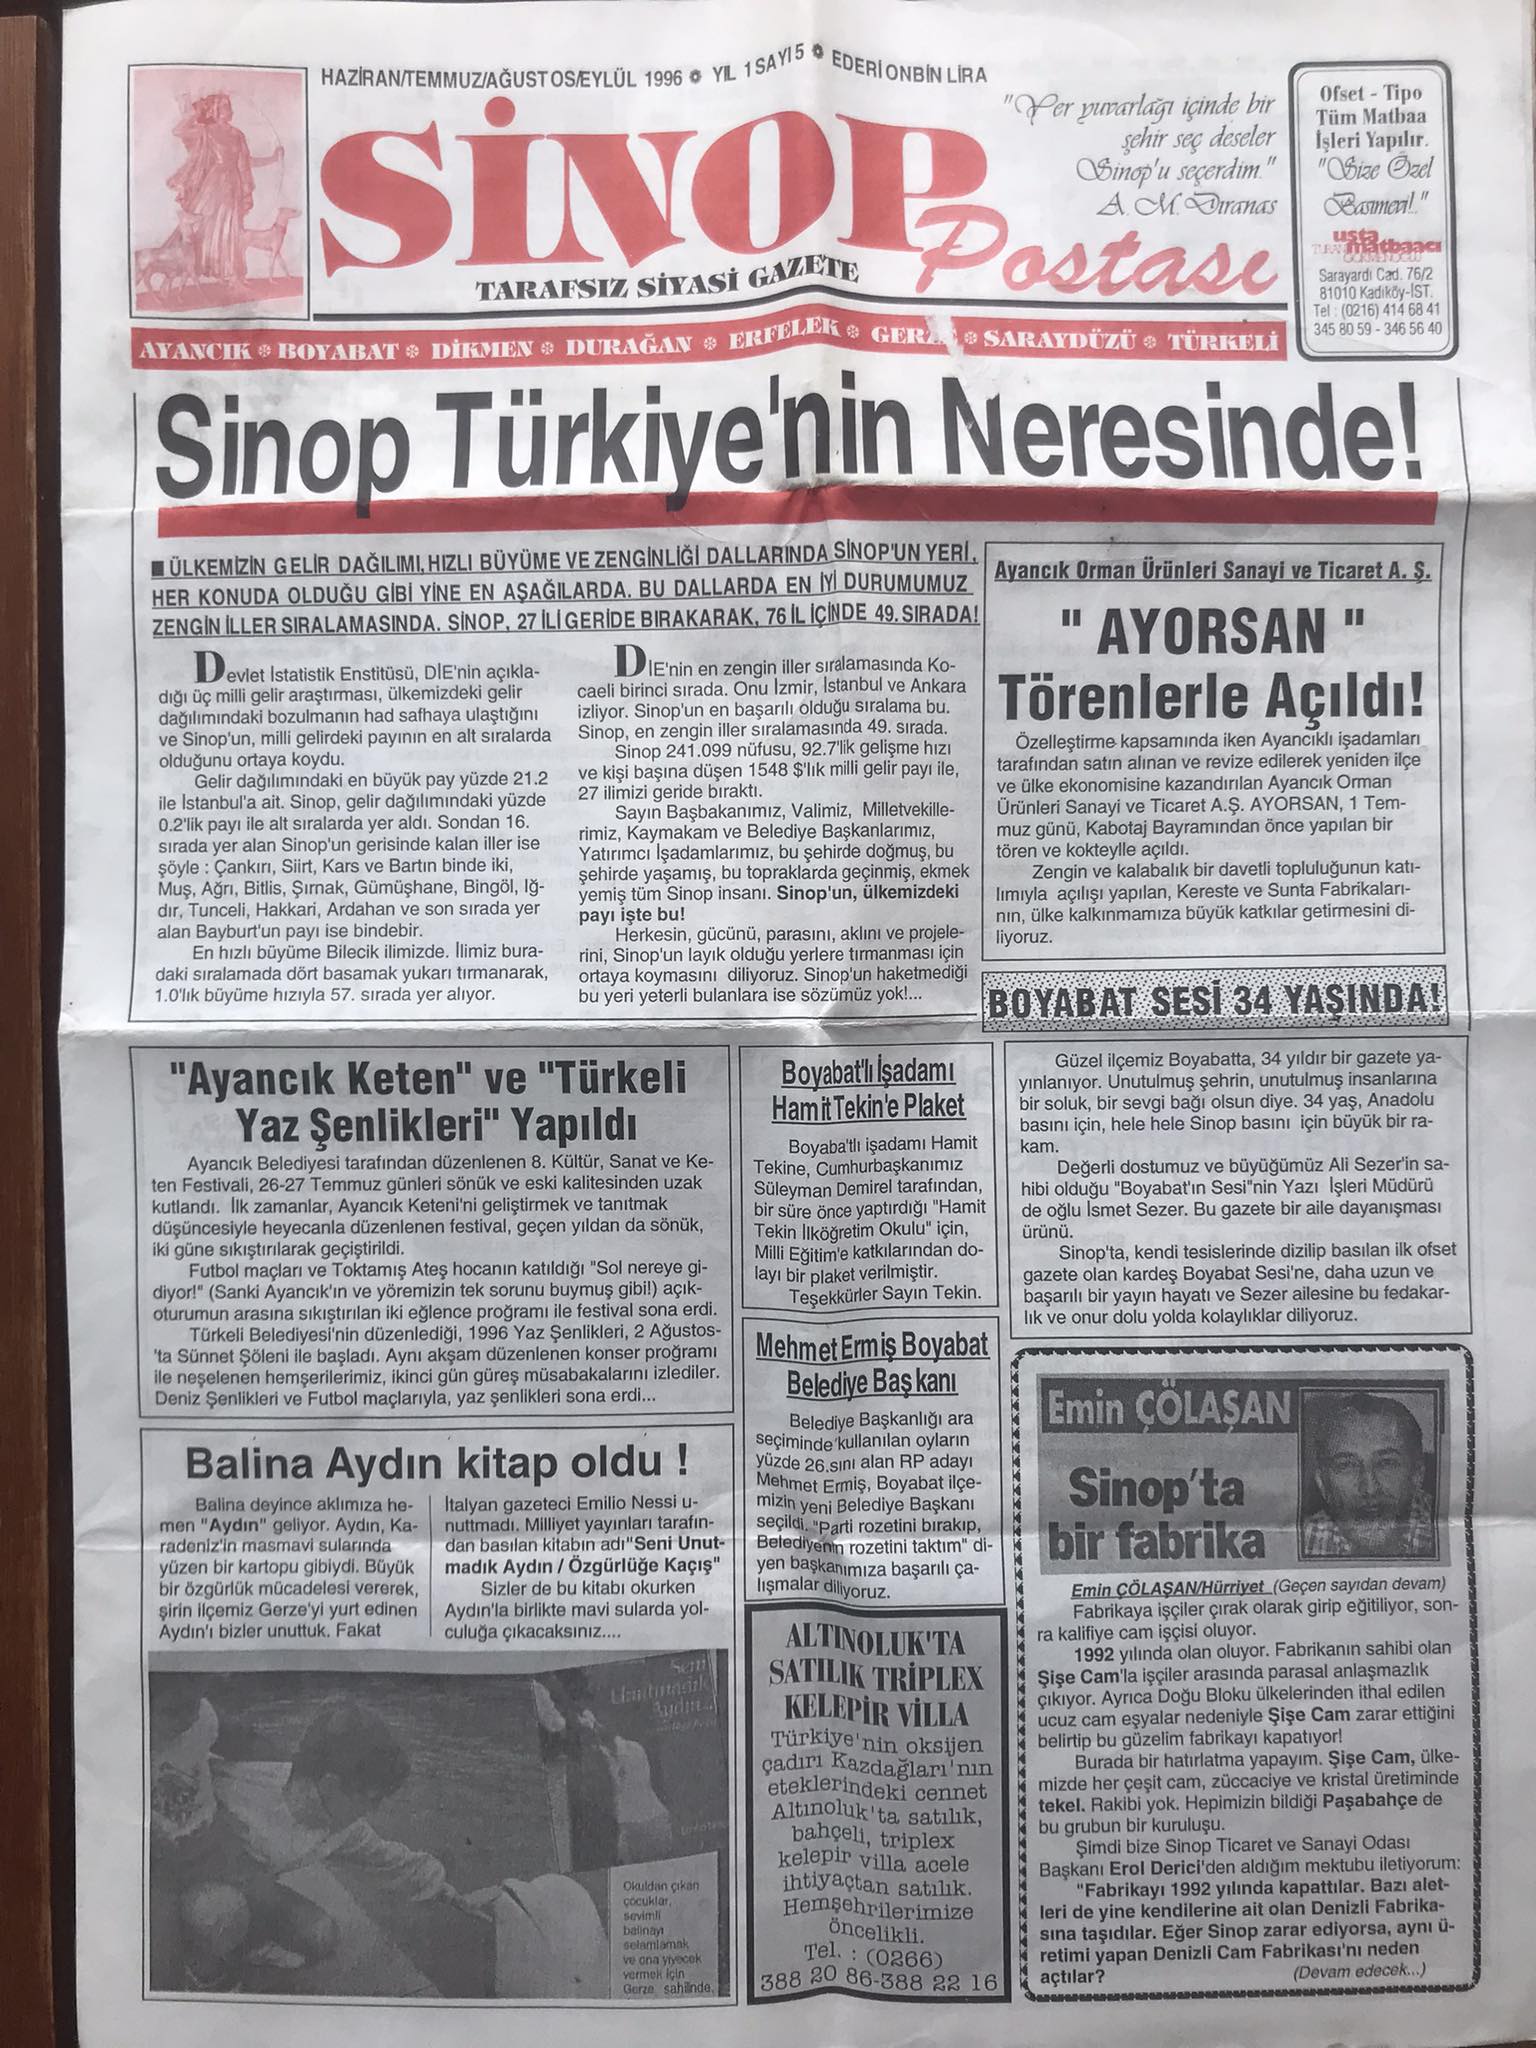 Turan Gökmenoğlu'nun ''Sinop Postası'' Gazetesi Yayın Hayatına Başladı